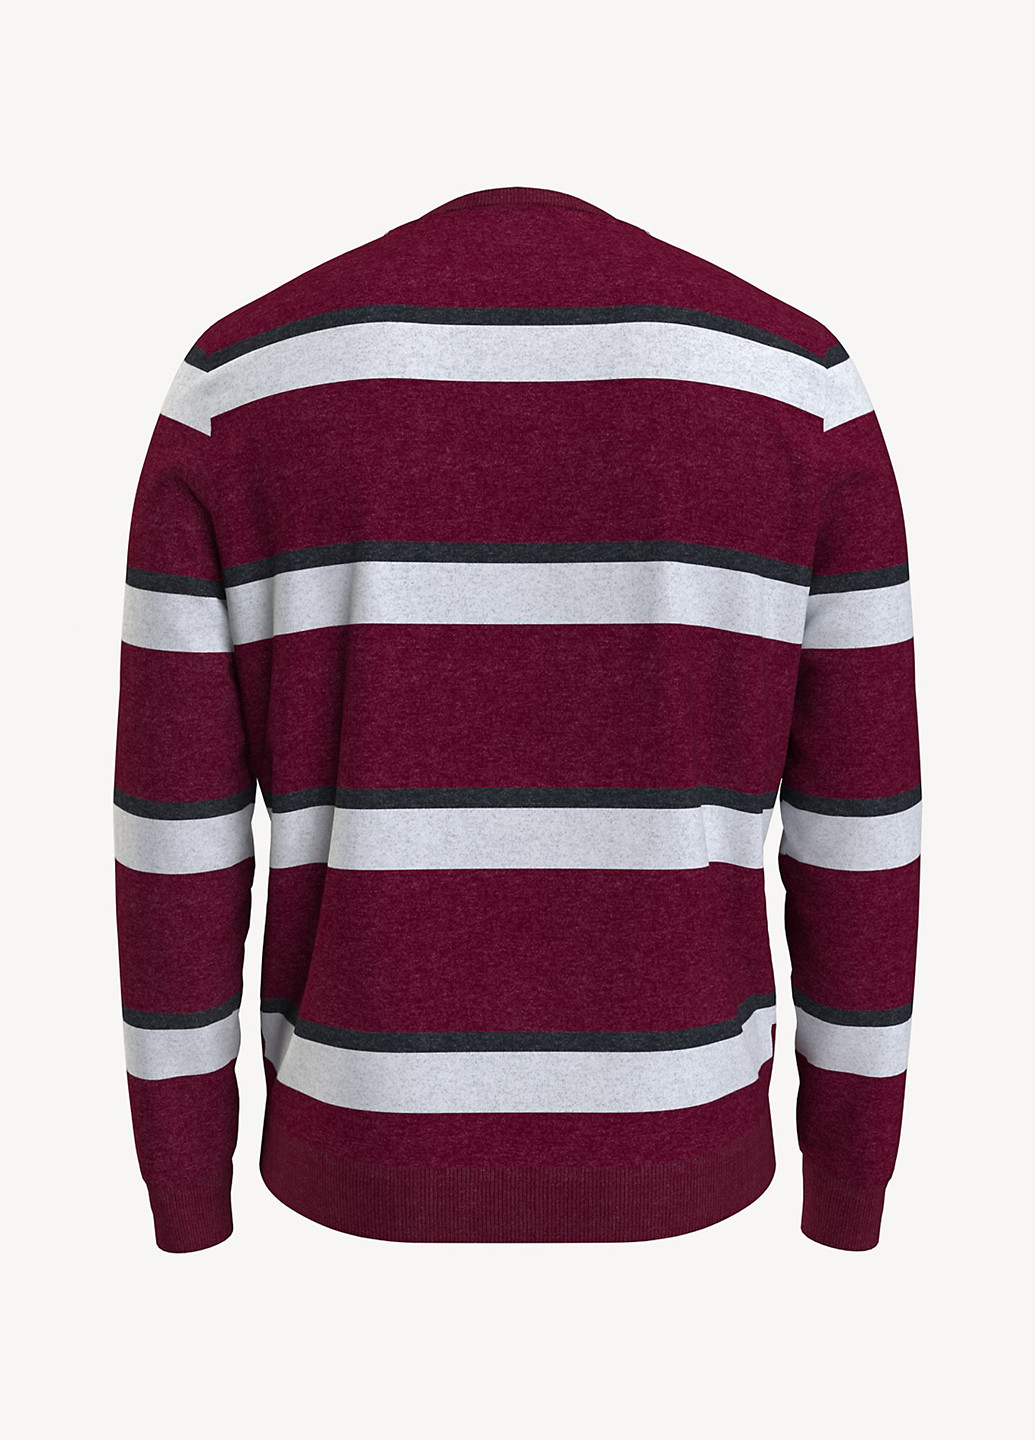 Бордовый демисезонный свитер джемпер Tommy Hilfiger